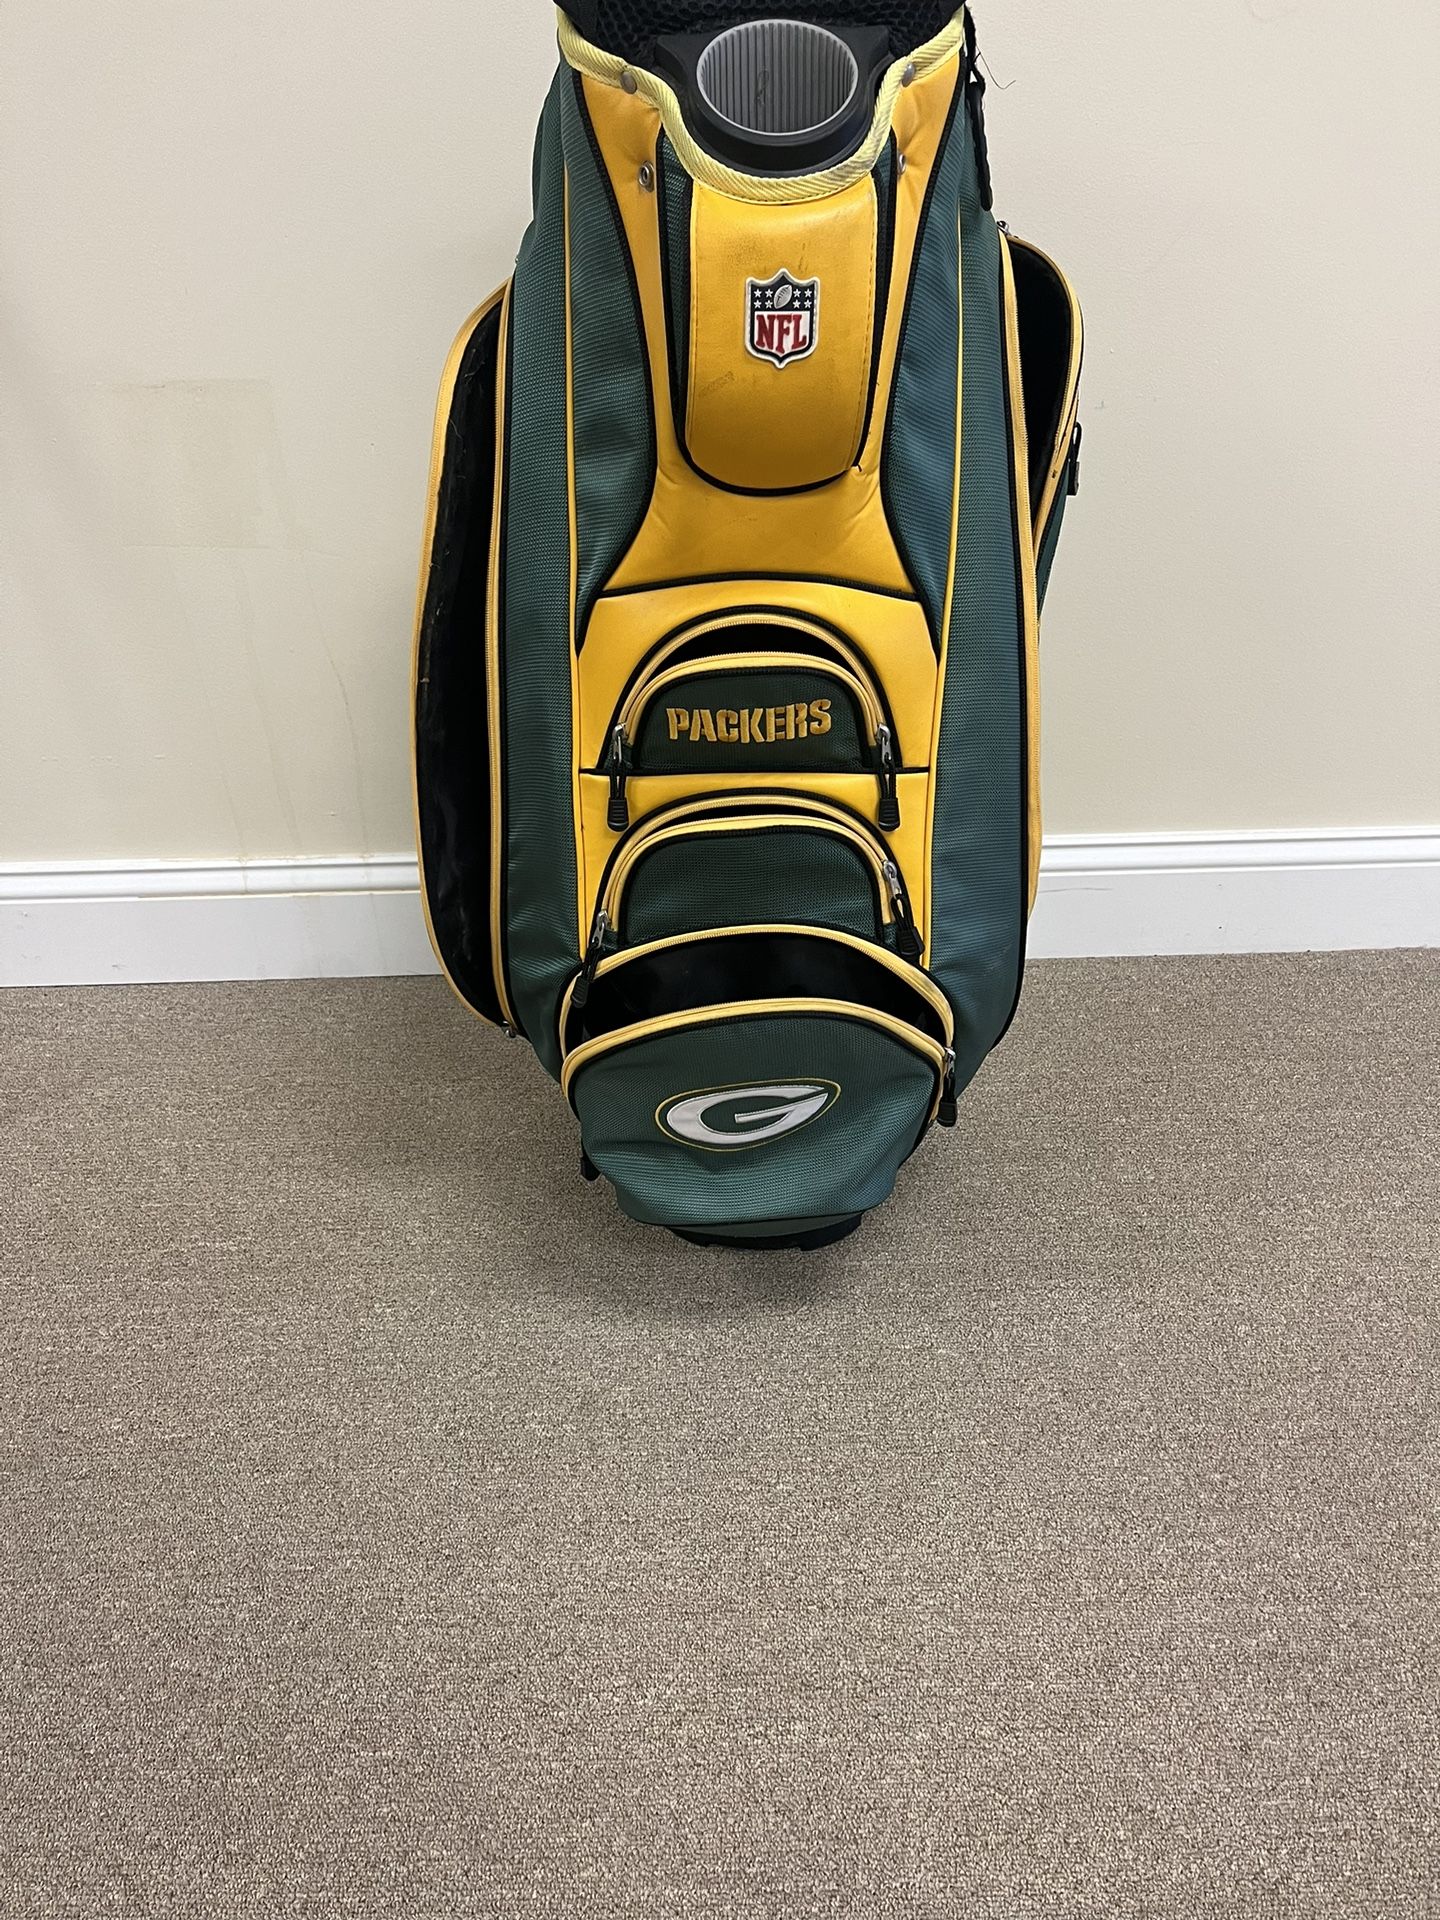 Green Bay Packers Golf Cart Bag